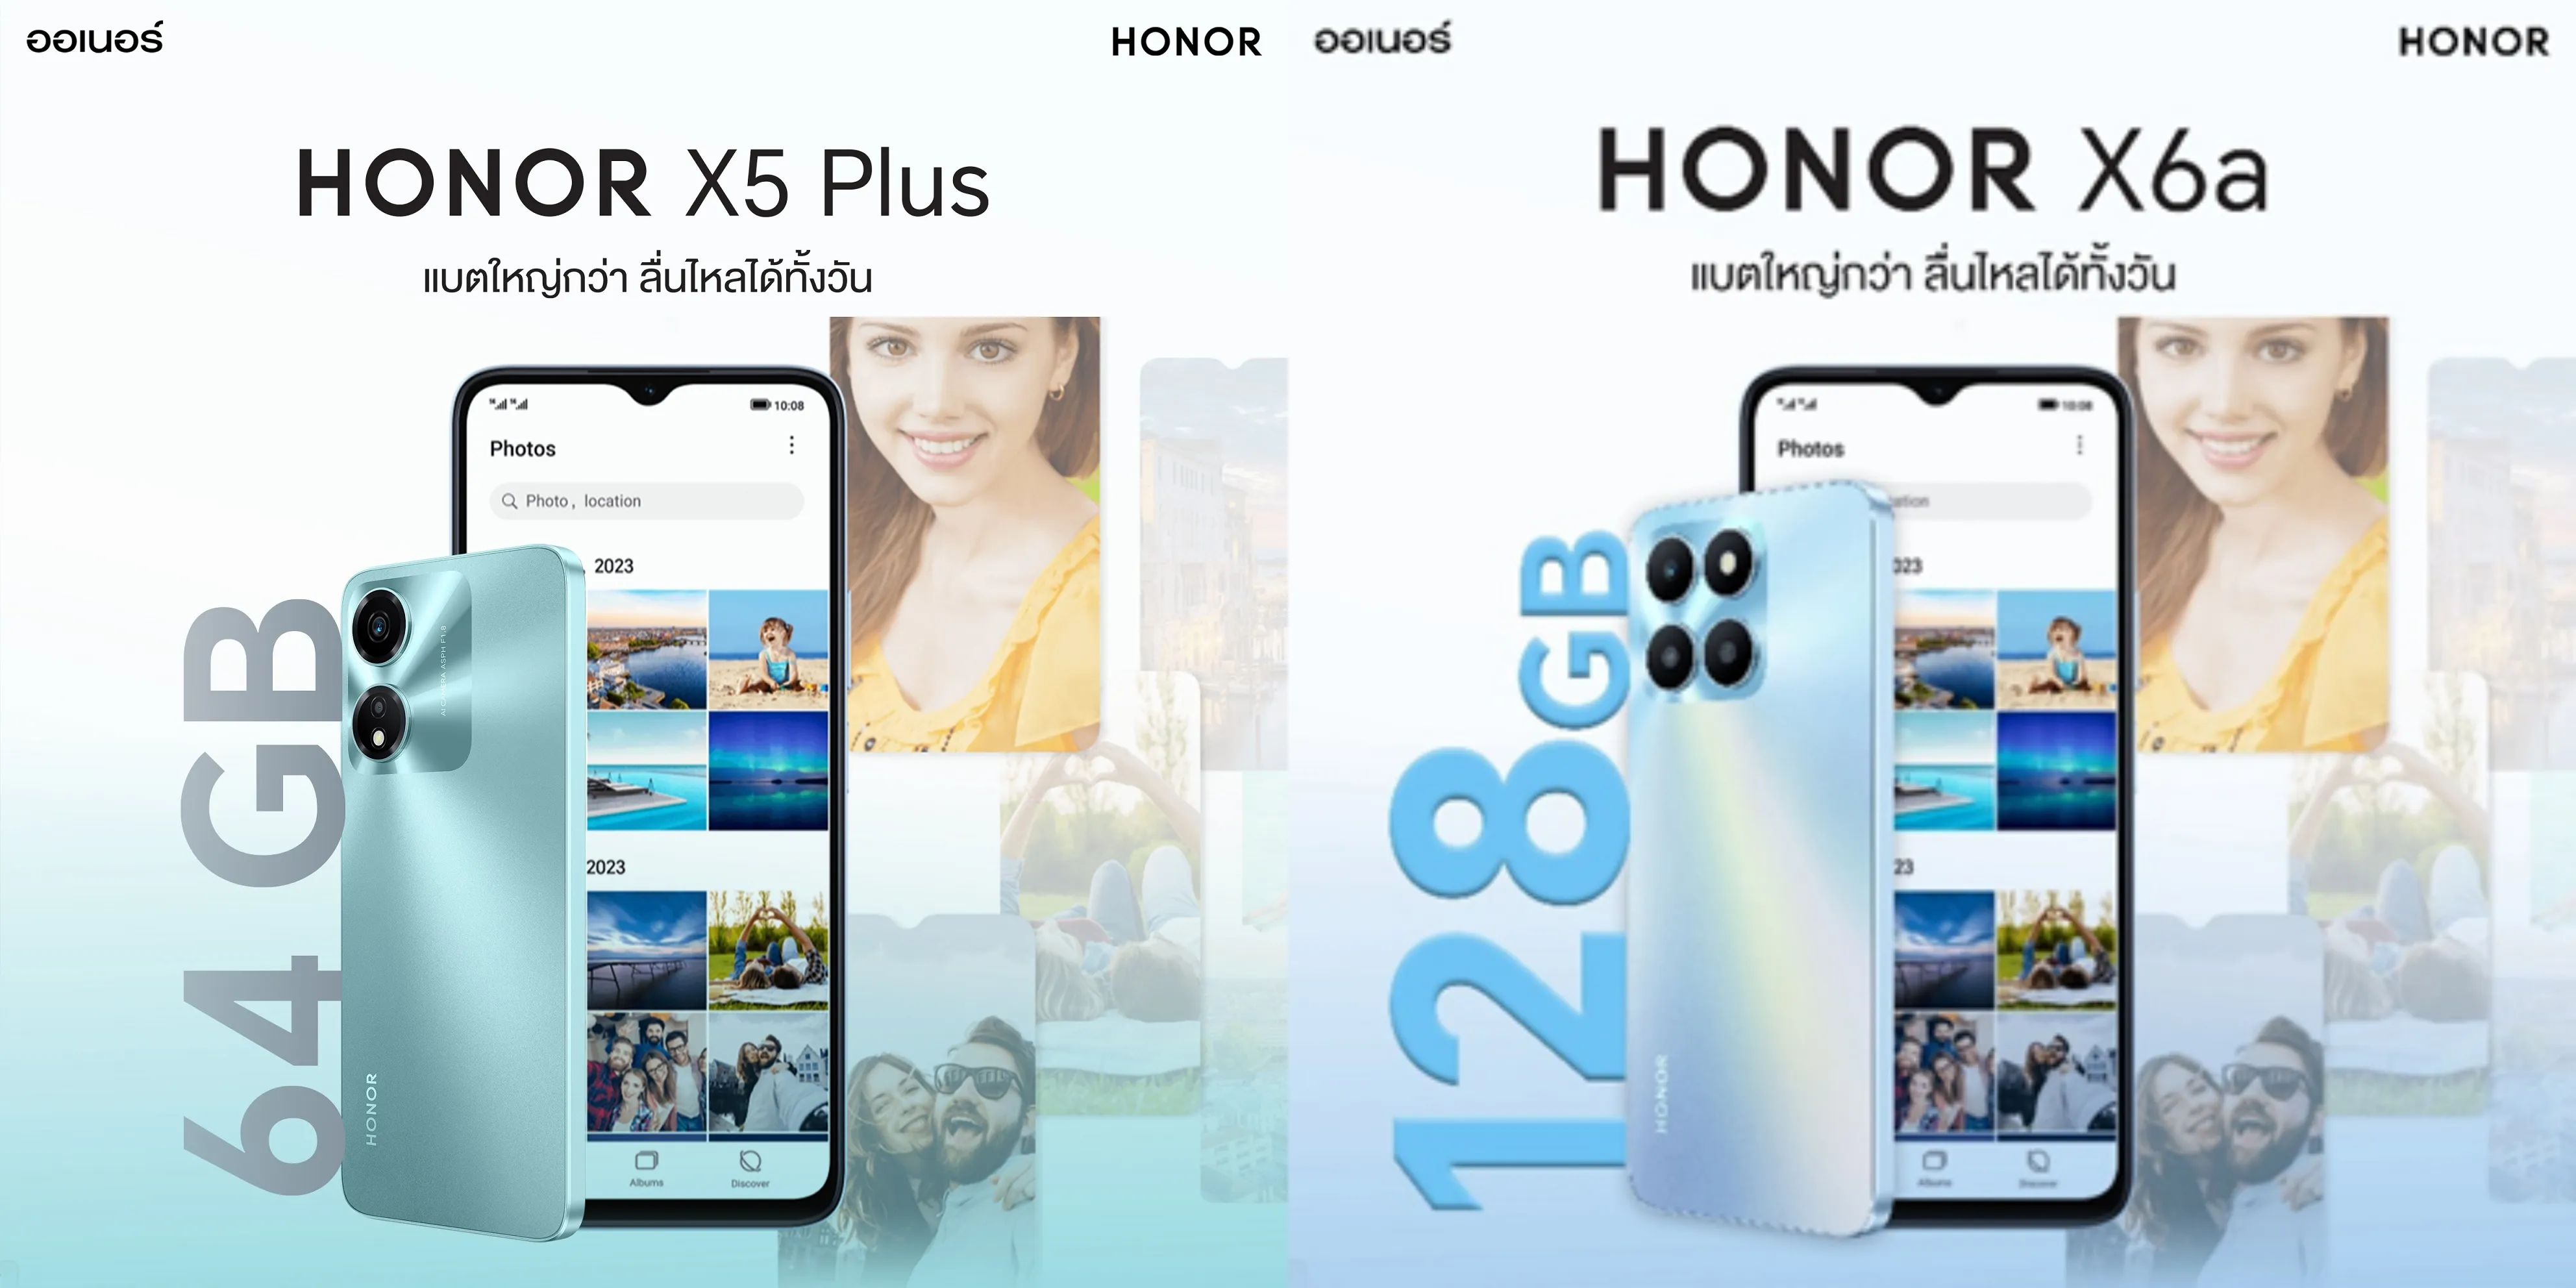 เปิดตัวแล้ววันนี้ HONOR X6a และ HONOR X5 Plus สมาร์ทโฟนรุ่นเริ่มต้น จัดเต็มความคุ้มค่า ด้วยแบตใหญ่กว่าไหลลื่นได้ทั้งวัน เริ่มต้นเพียง 3,499 บาท